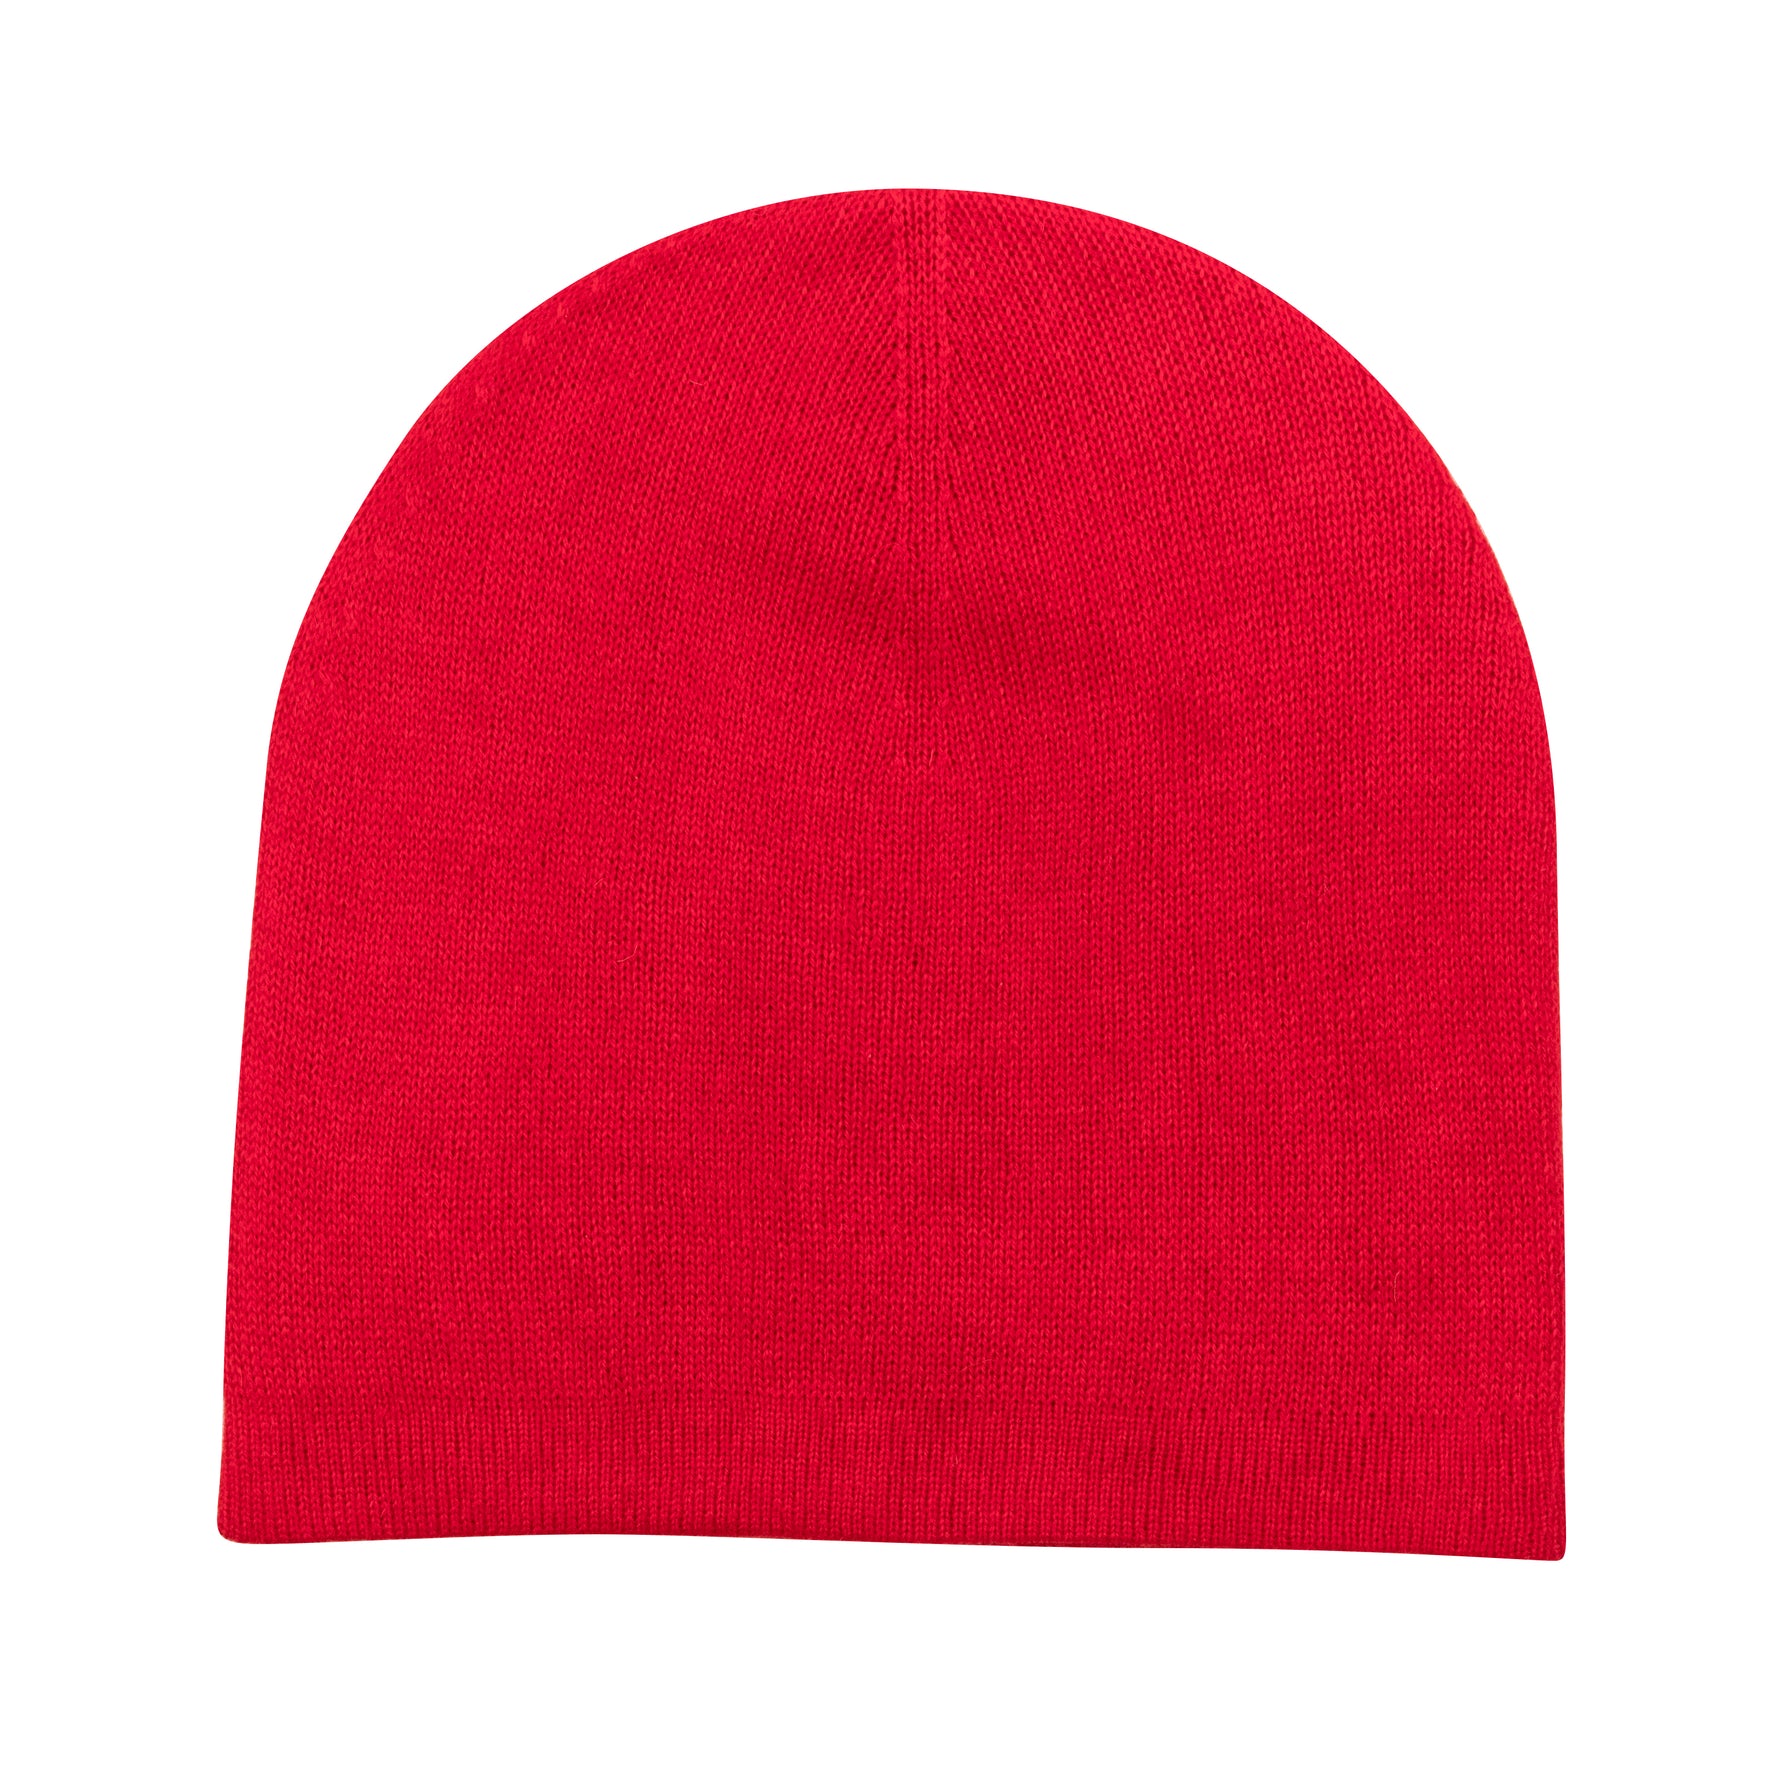 Bonnet bonnet cachemire lisse rouge